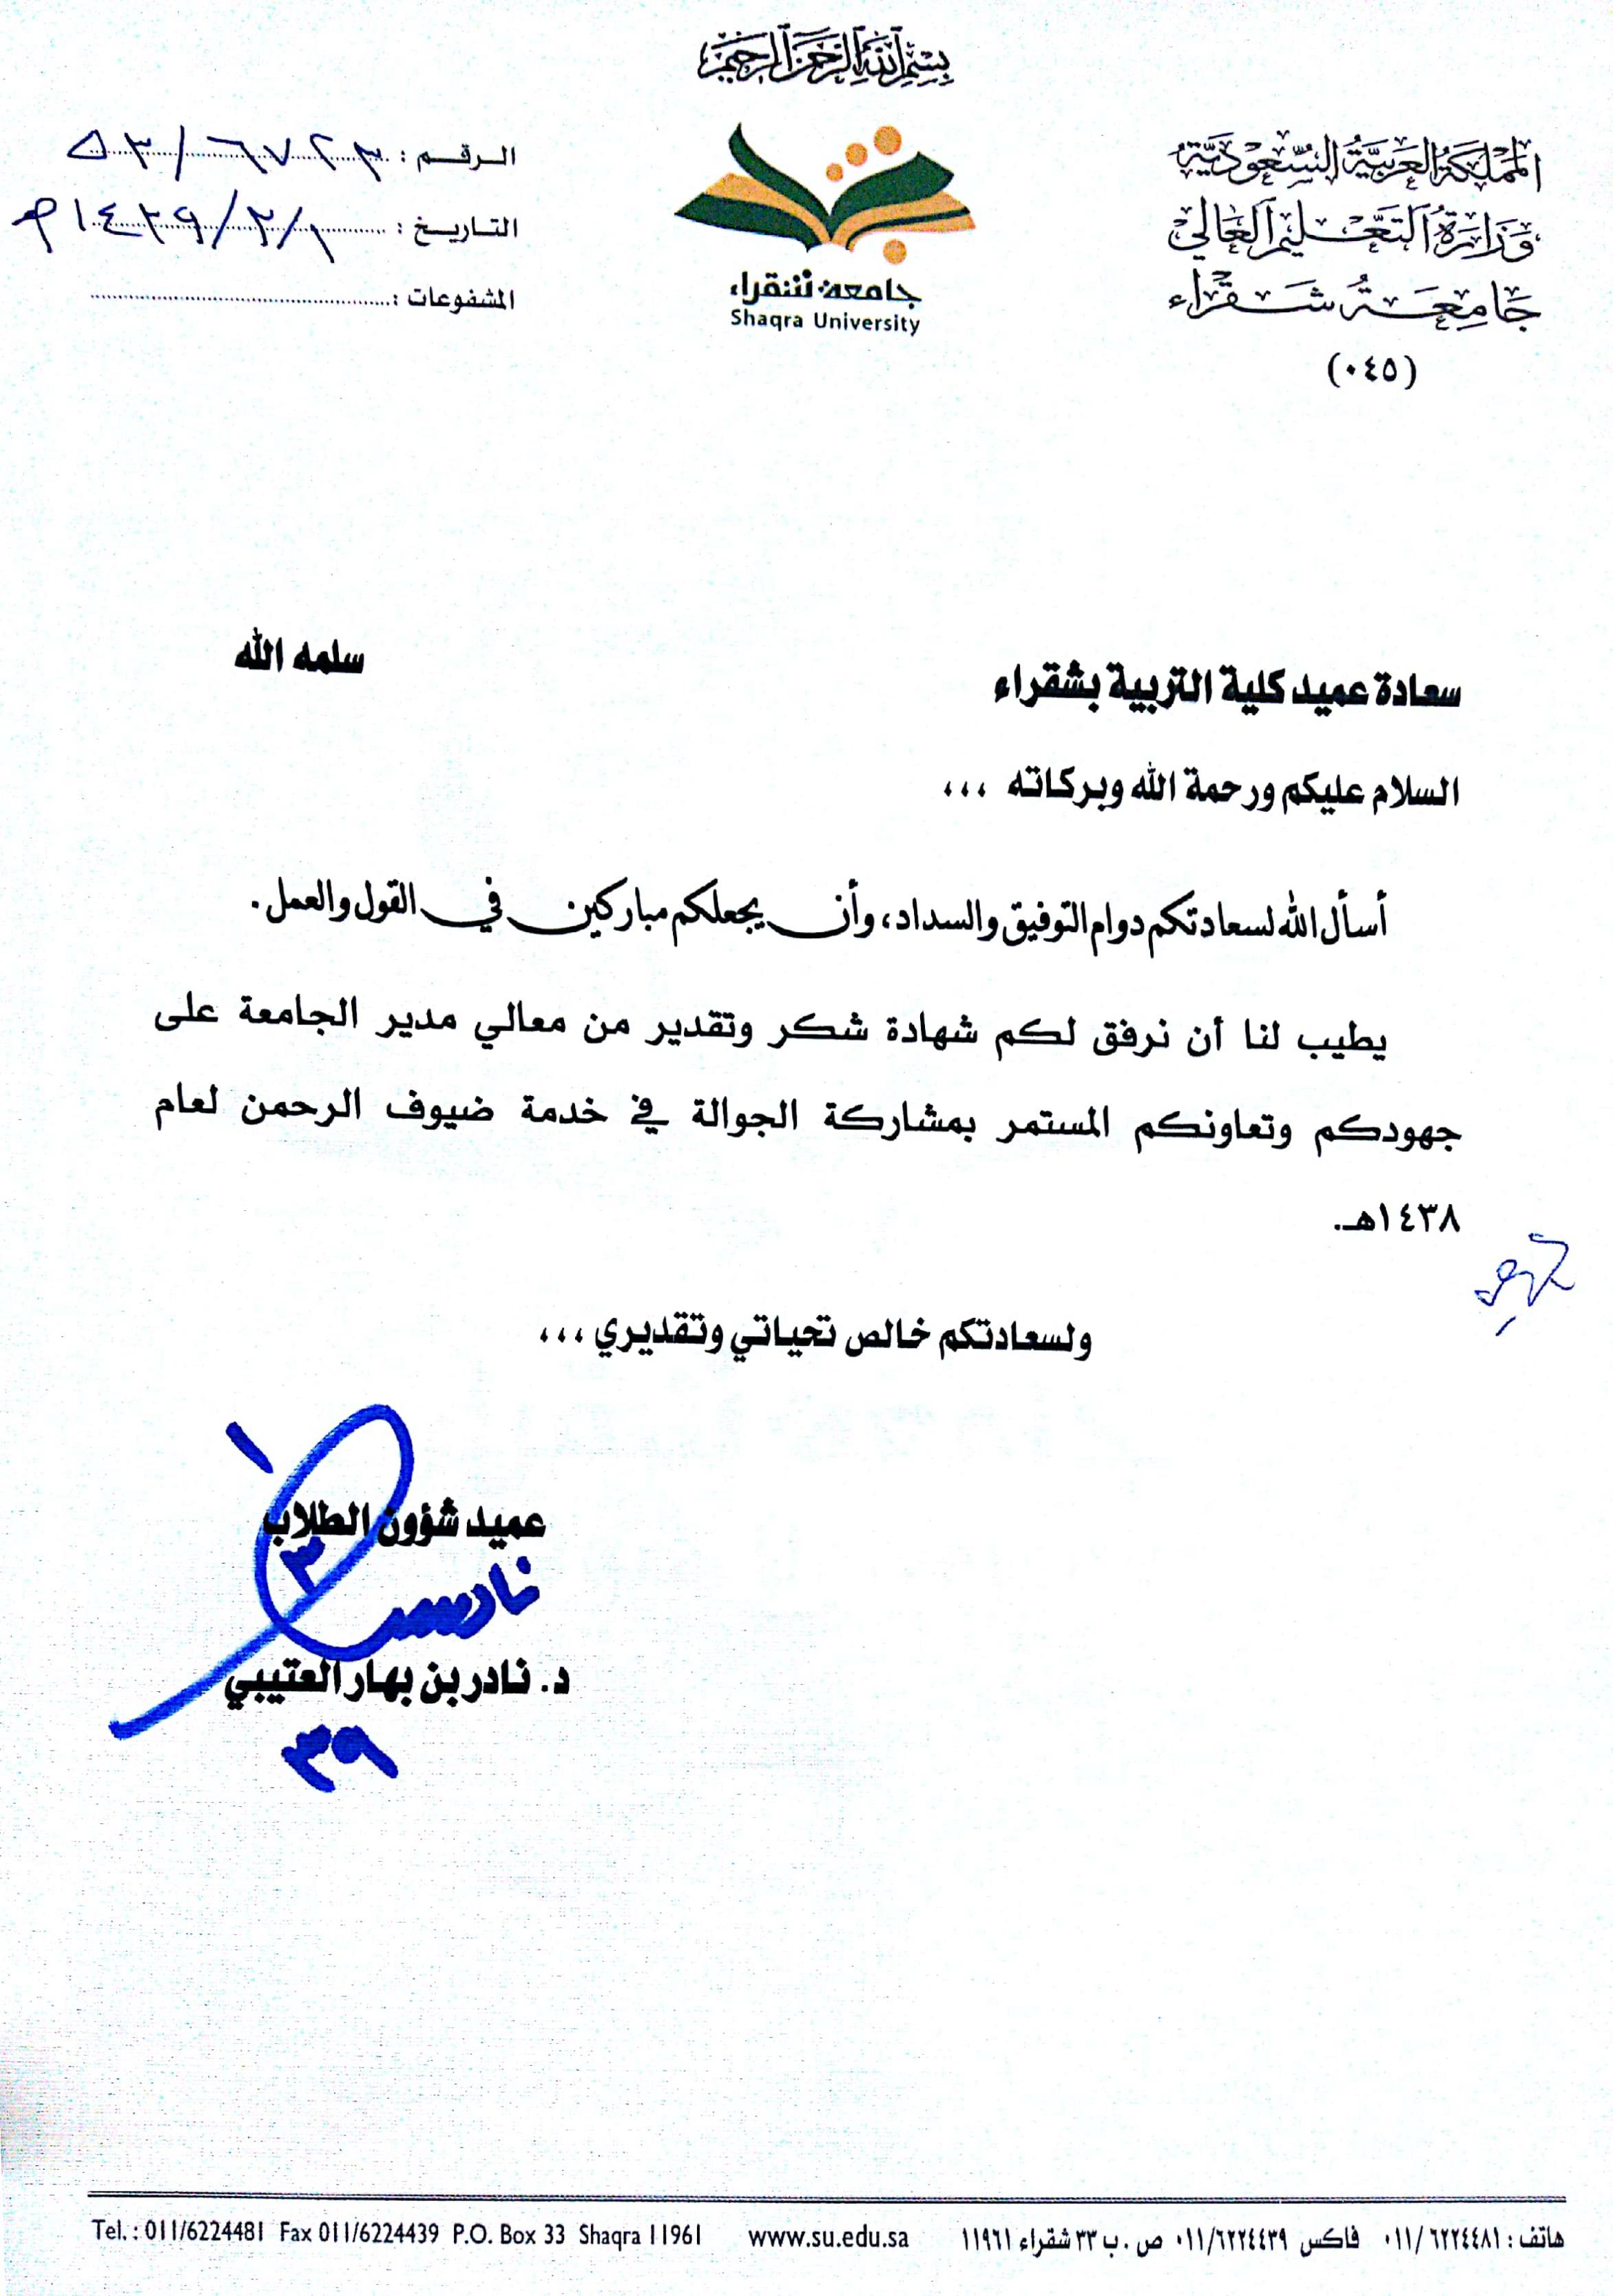 رسالة شكر رسمية باللغة العربية.  اجمل رسائل شكر للمديرات المرأة العصرية